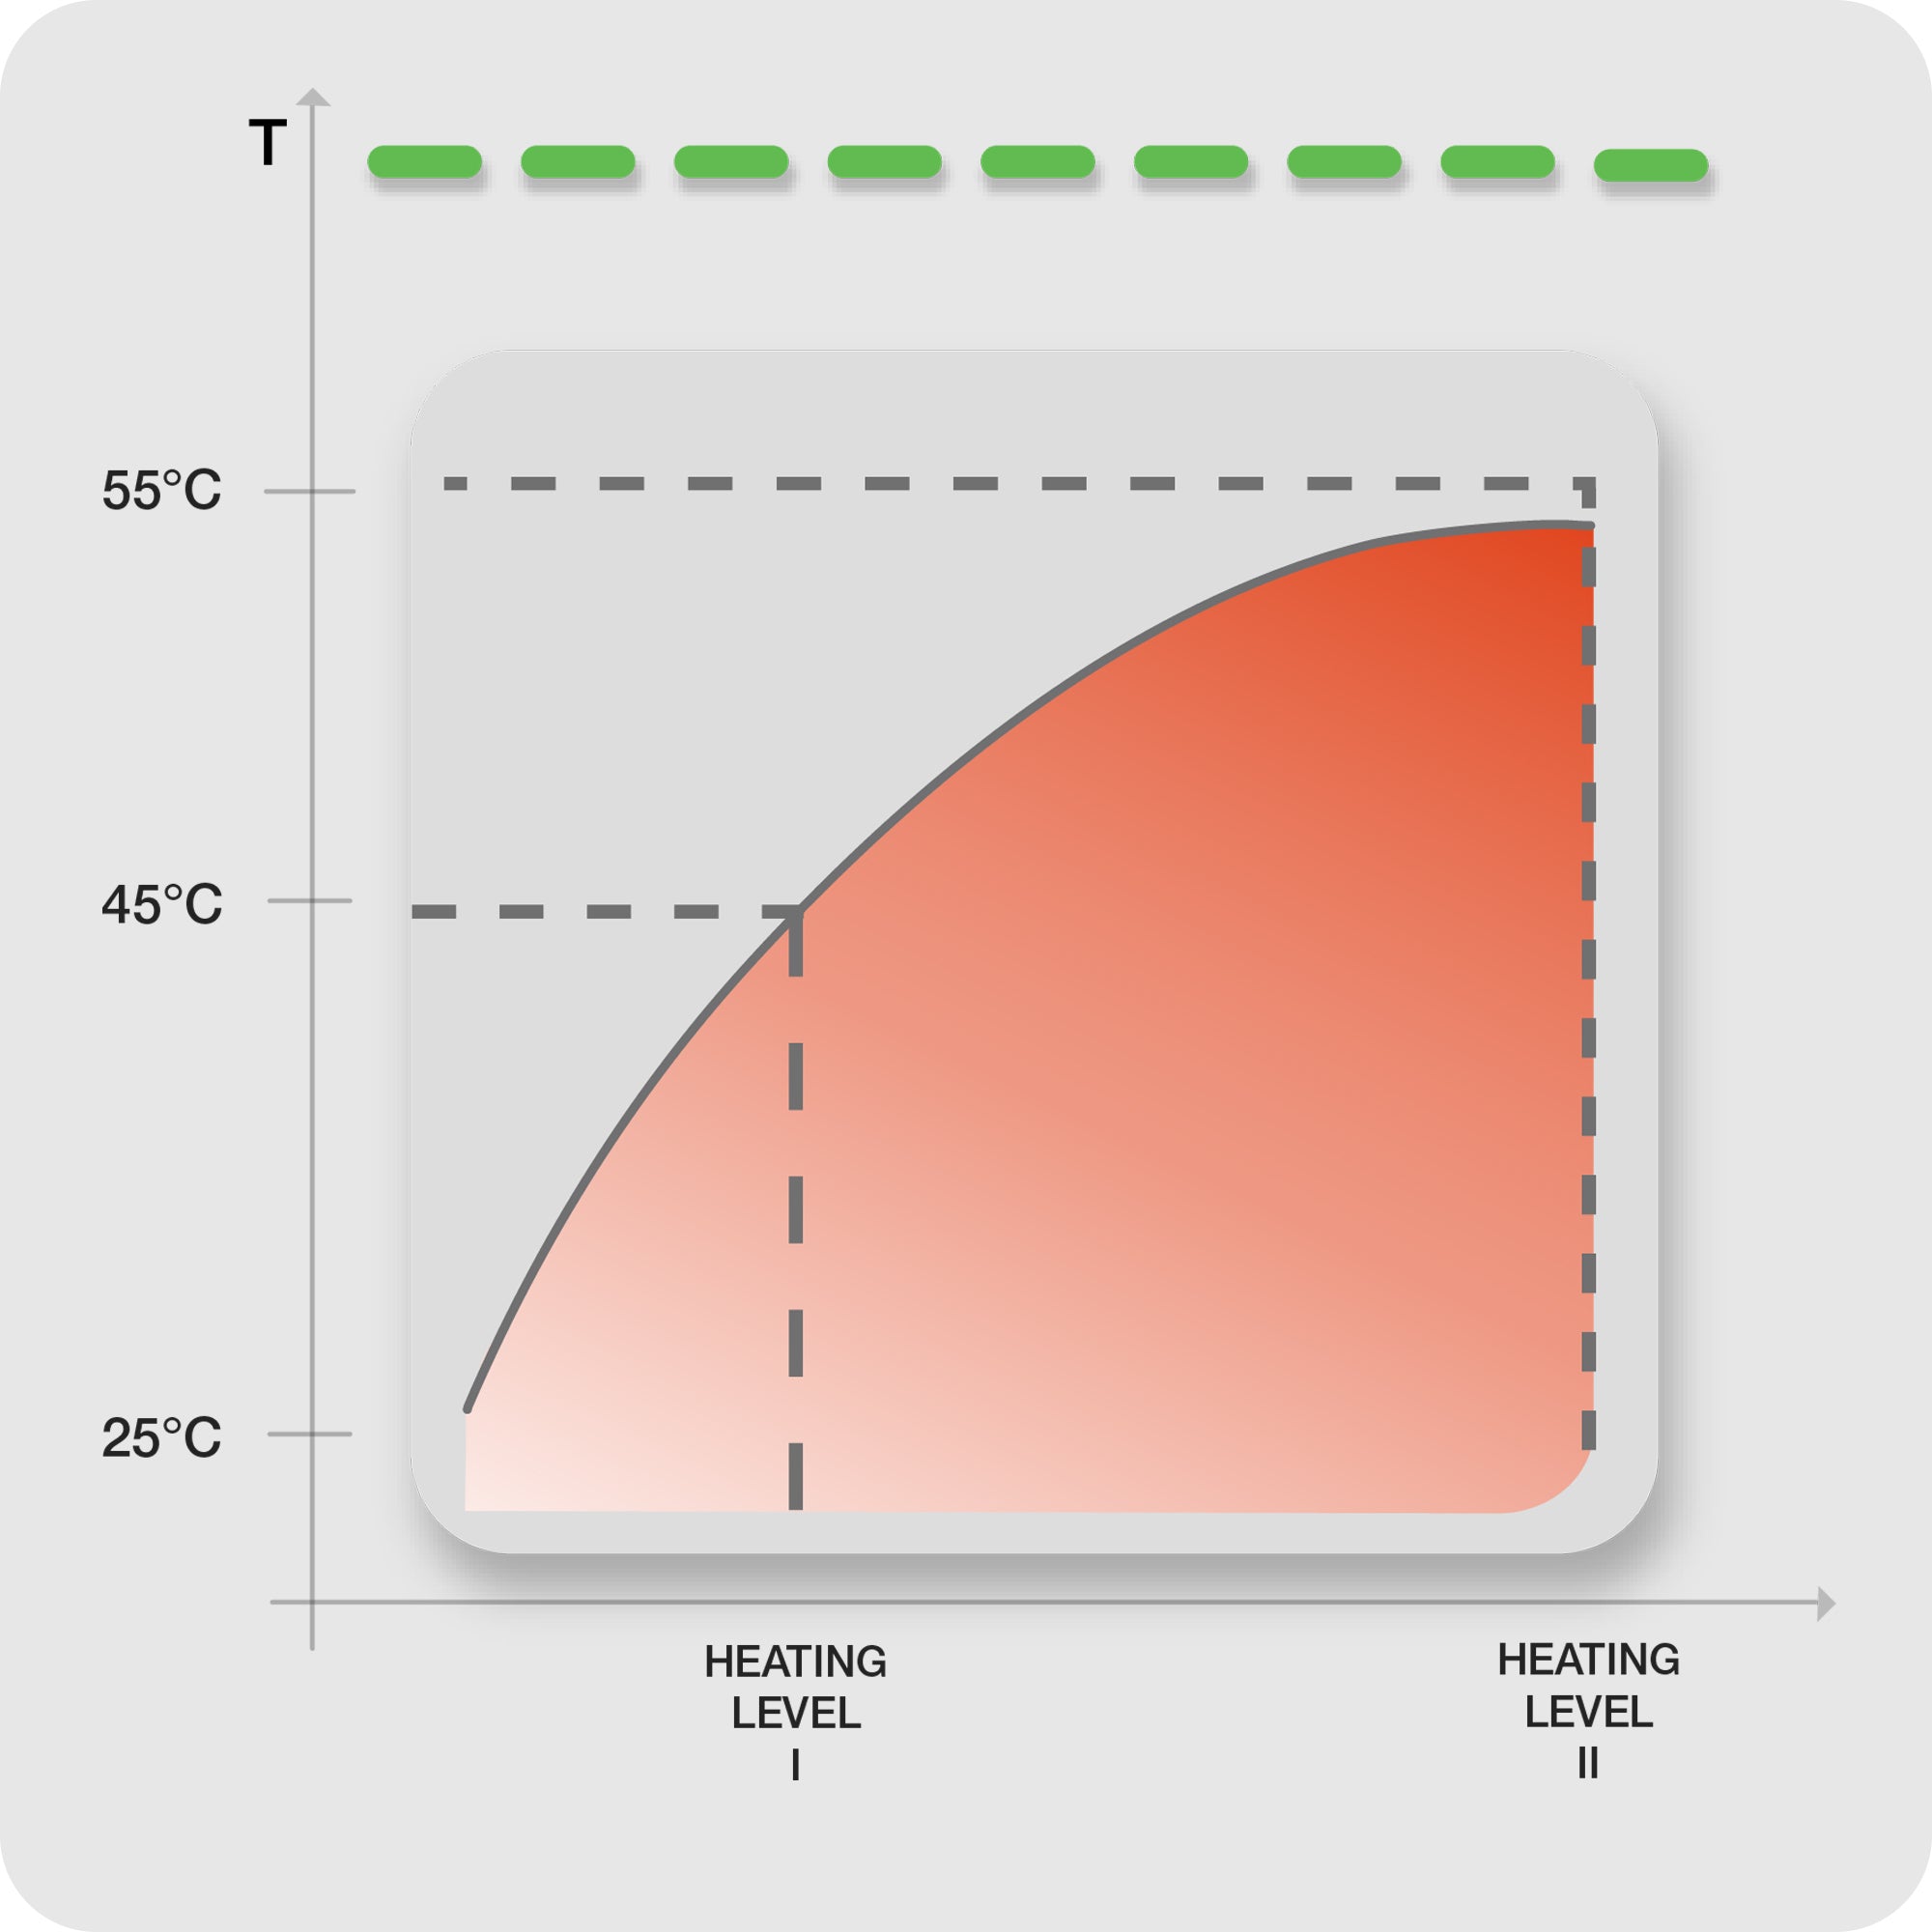 diagram illustrating heat levels with corresponding temperatures